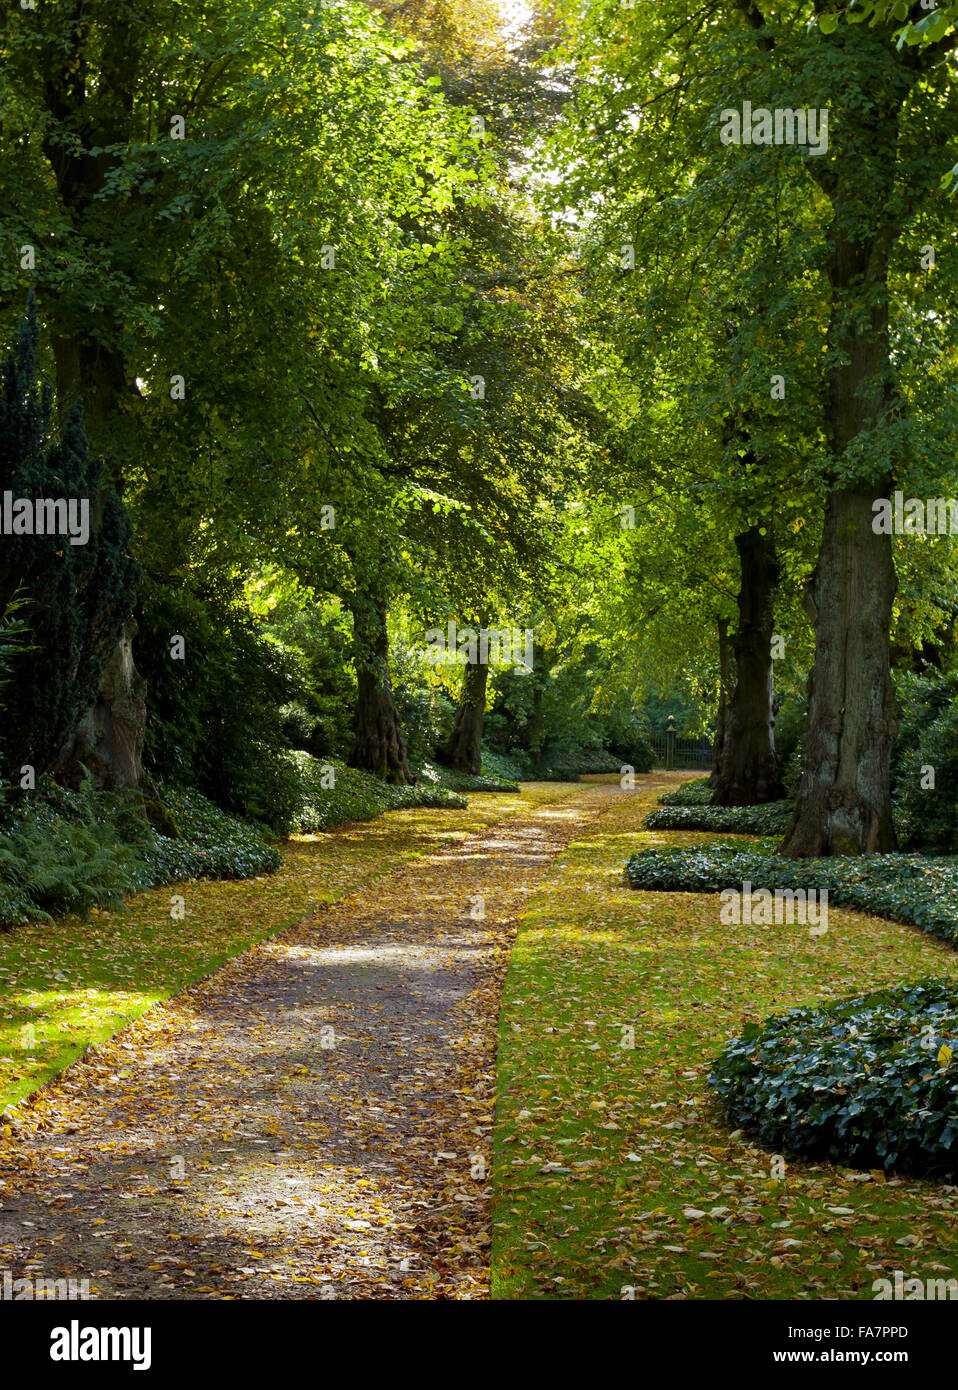 L'Avenue de la chaux en octobre à Biddulph Grange Jardin, Staffordshire. Banque D'Images